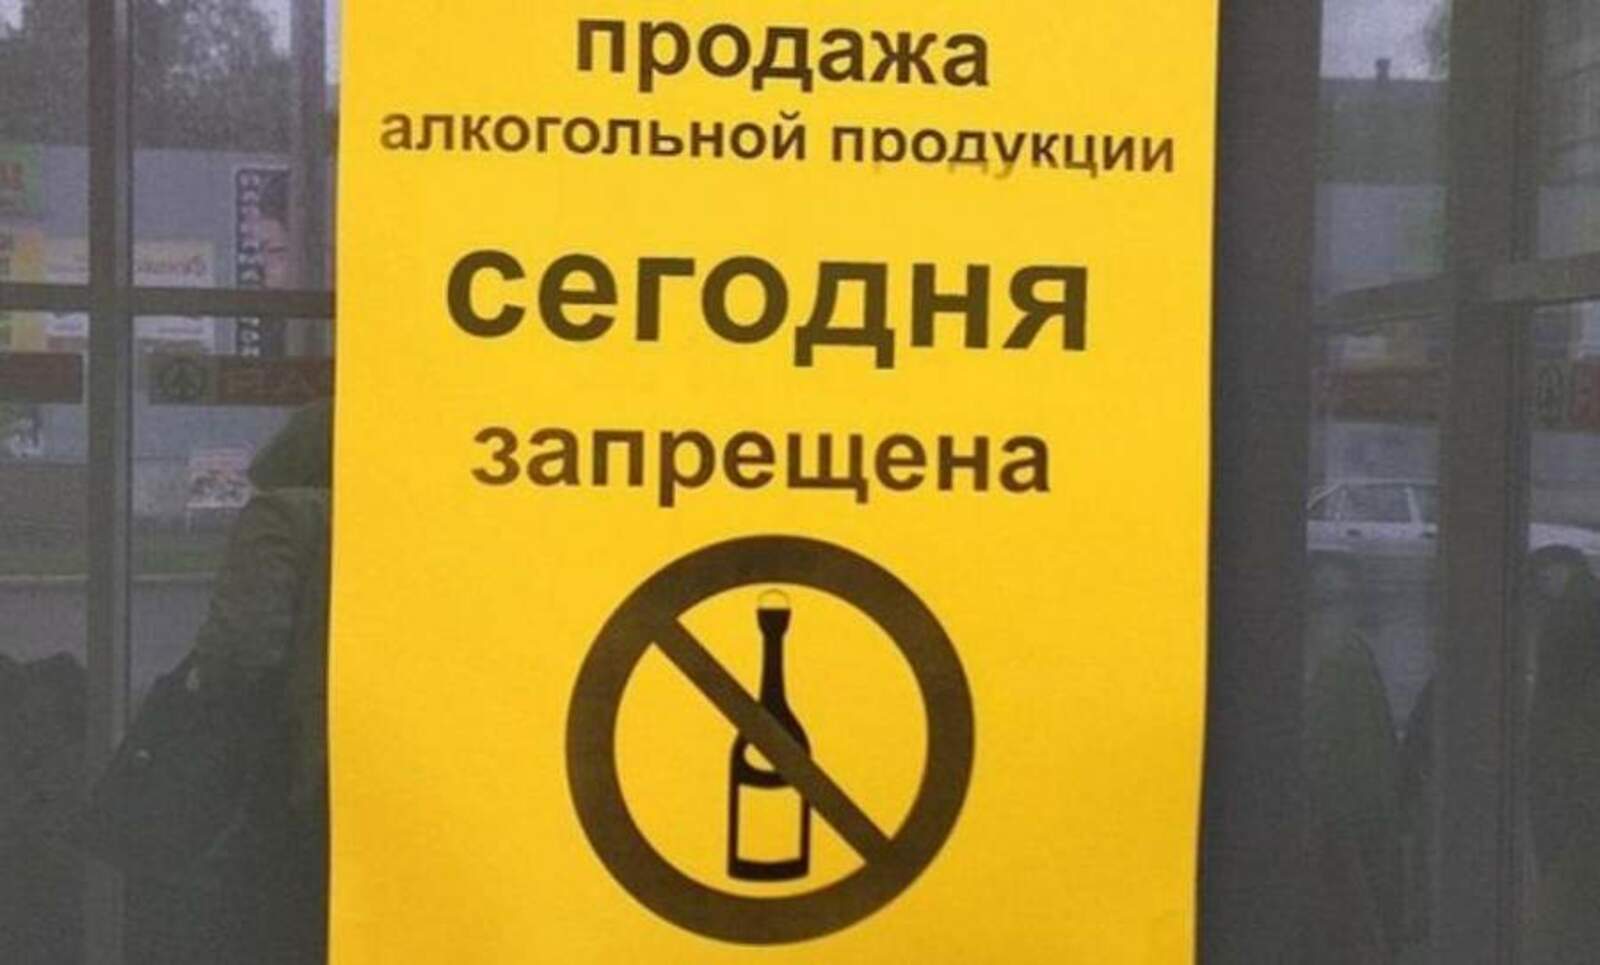 Запрет на куплю продажу. Продажа алкогольной продукции запрещена. Объявление о запрете торговли алкоголем. Алкогольная продукция запрещ. Продажа запрещена.